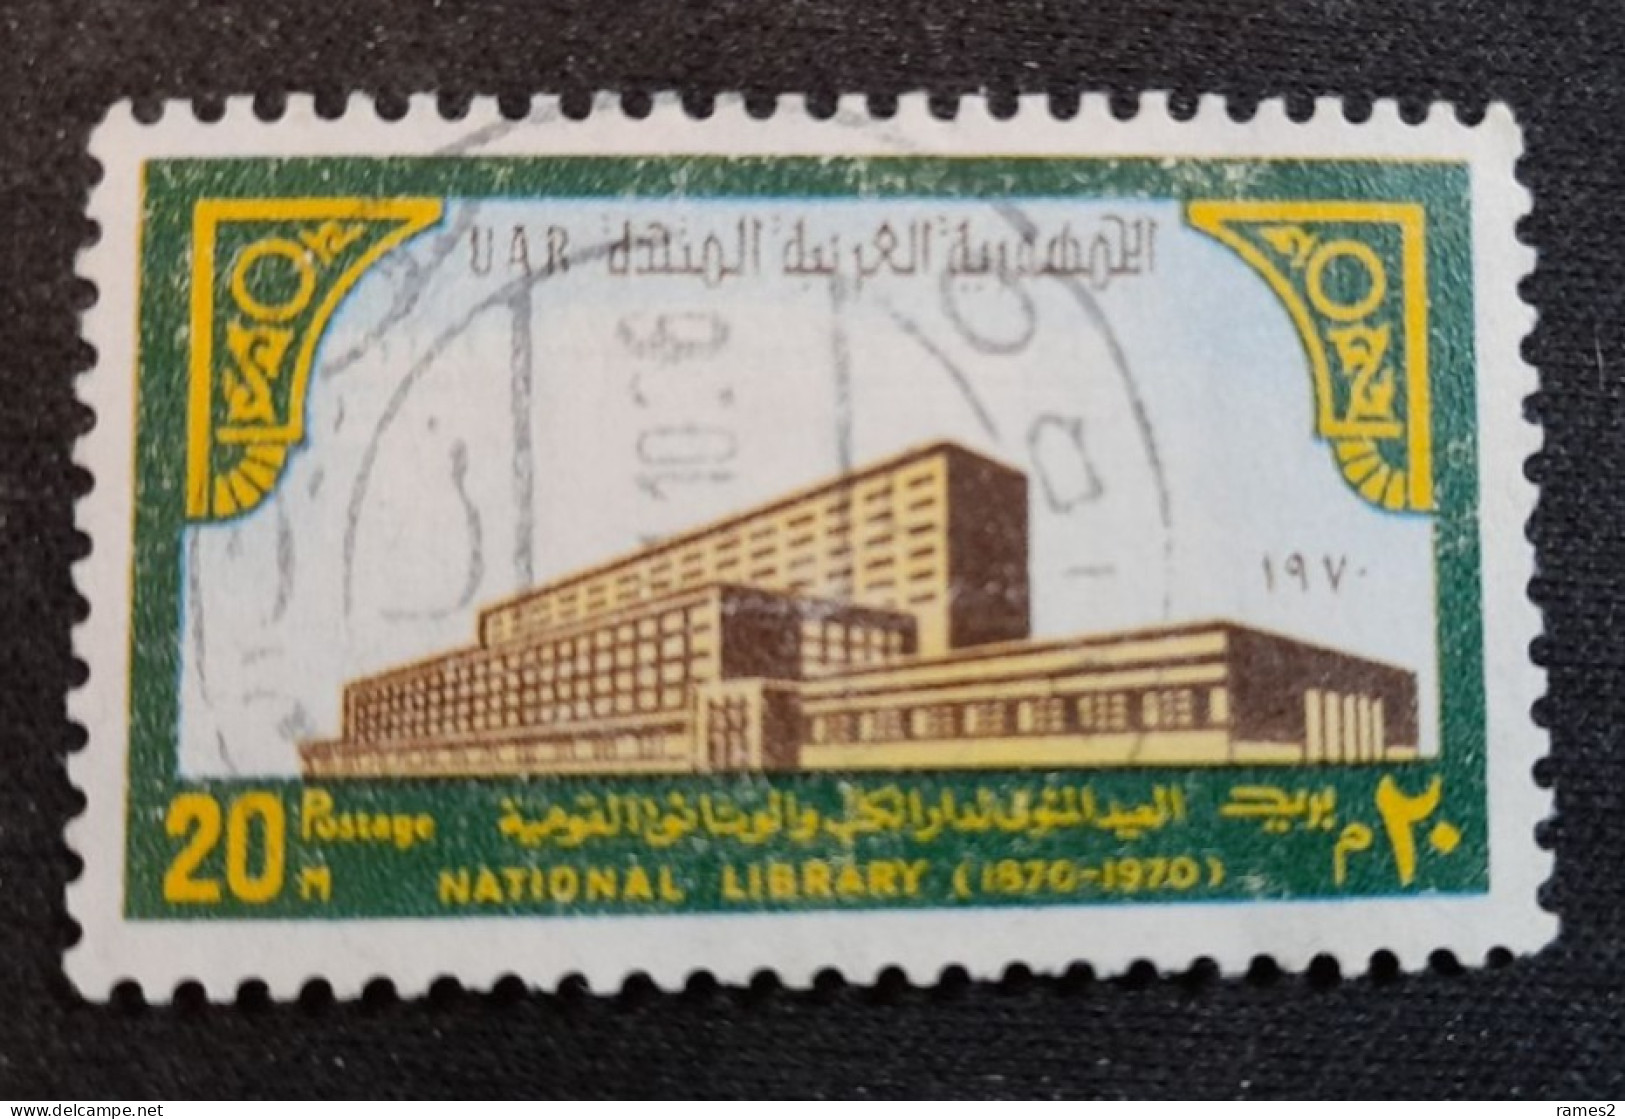 Egypte > 1953-... République > 1960-69 > Oblitérés N° 840 - Gebraucht